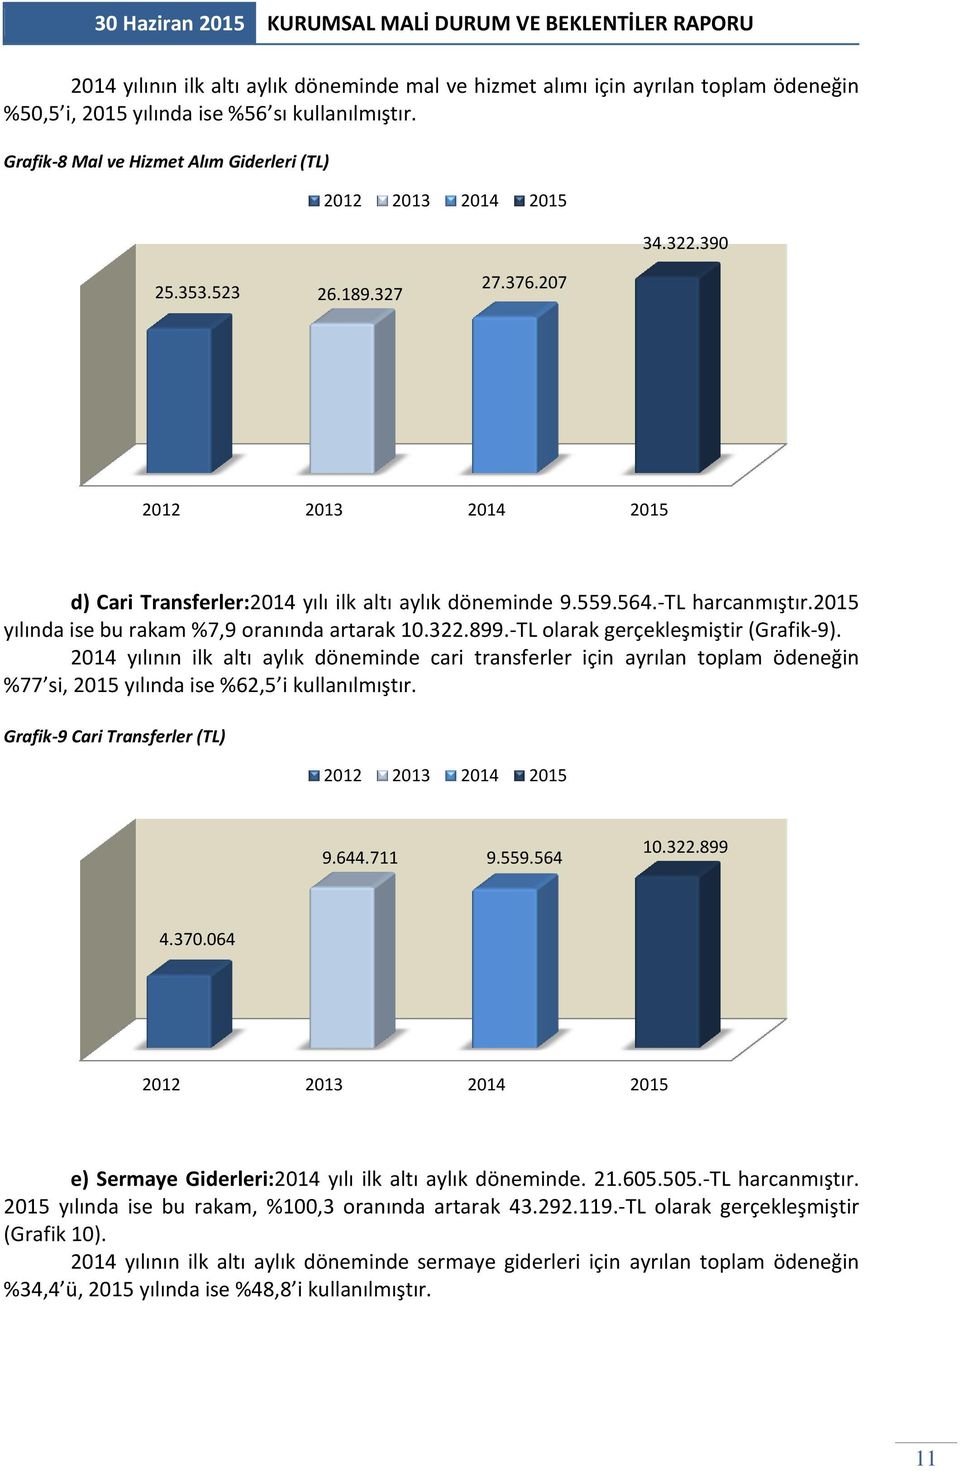 -TL olarak gerçekleşmiştir (Grafik-9). 2014 yılının ilk altı aylık döneminde cari transferler için ayrılan toplam ödeneğin %77 si, 2015 yılında ise %62,5 i kullanılmıştır.